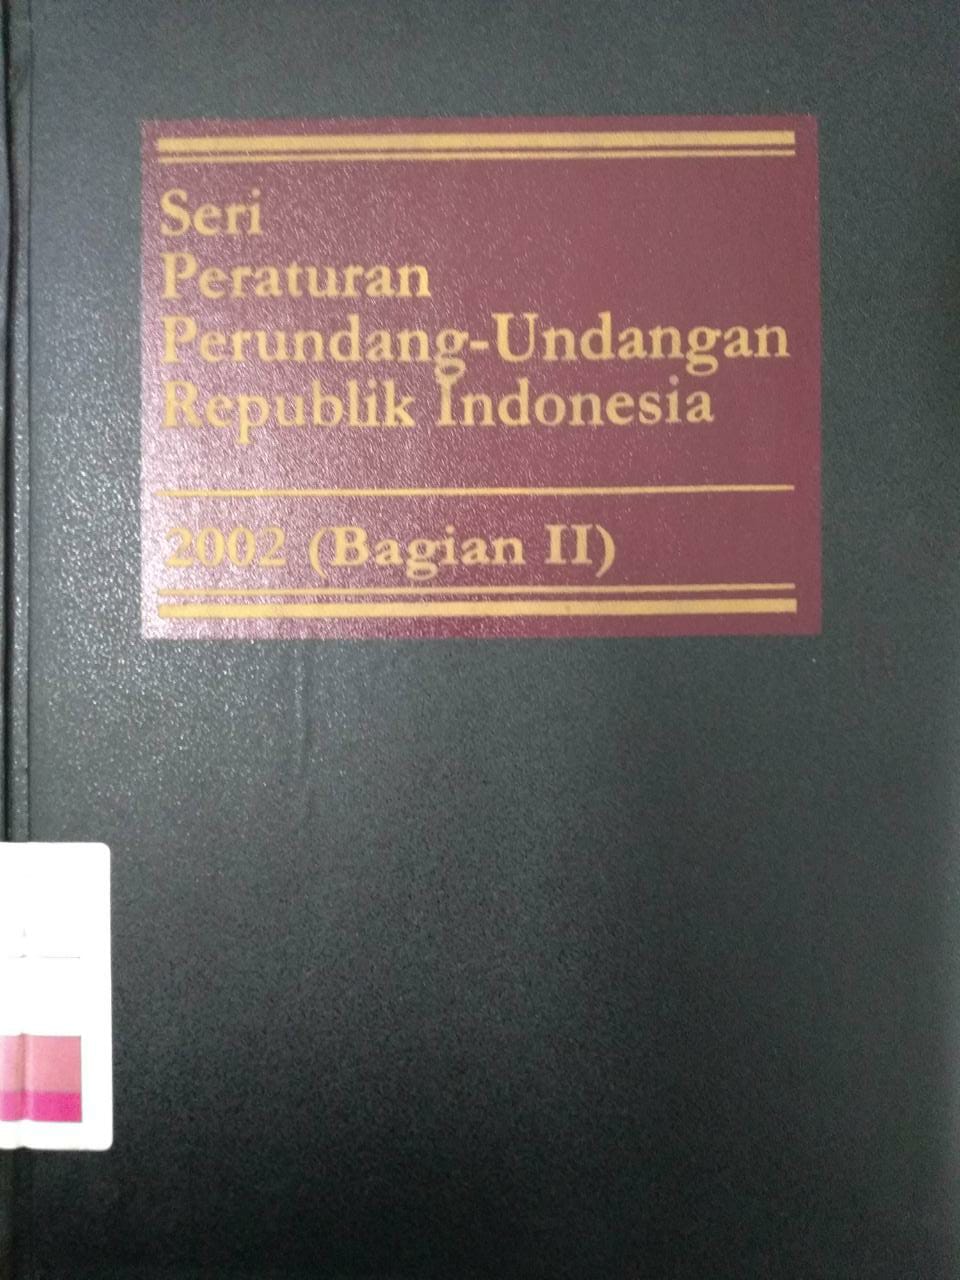 Seri Peraturan Perundang-undangan Republik Indonesia 2002 (Bagian II)